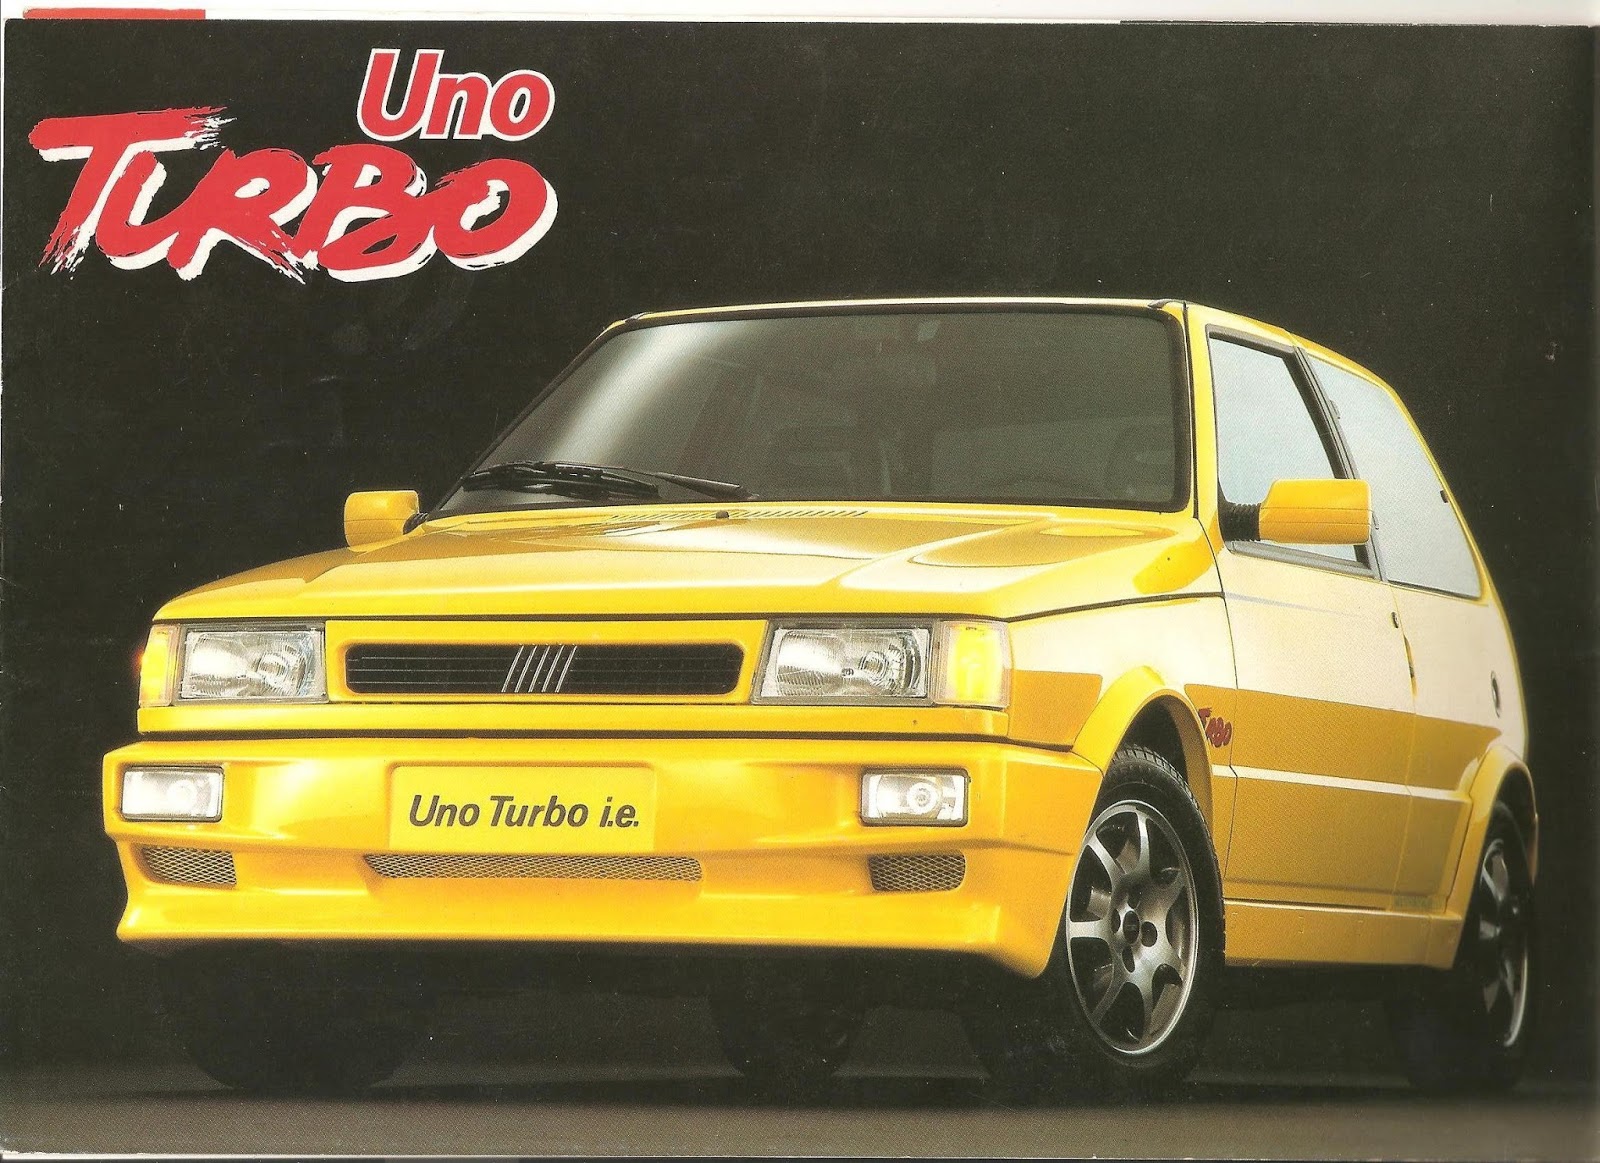 Carros na Web, Fiat Tempra Stile 2.0 i.e. Turbo 1995, Ficha Técnica,  Especificações, Equipamentos, Fotos, Preço.